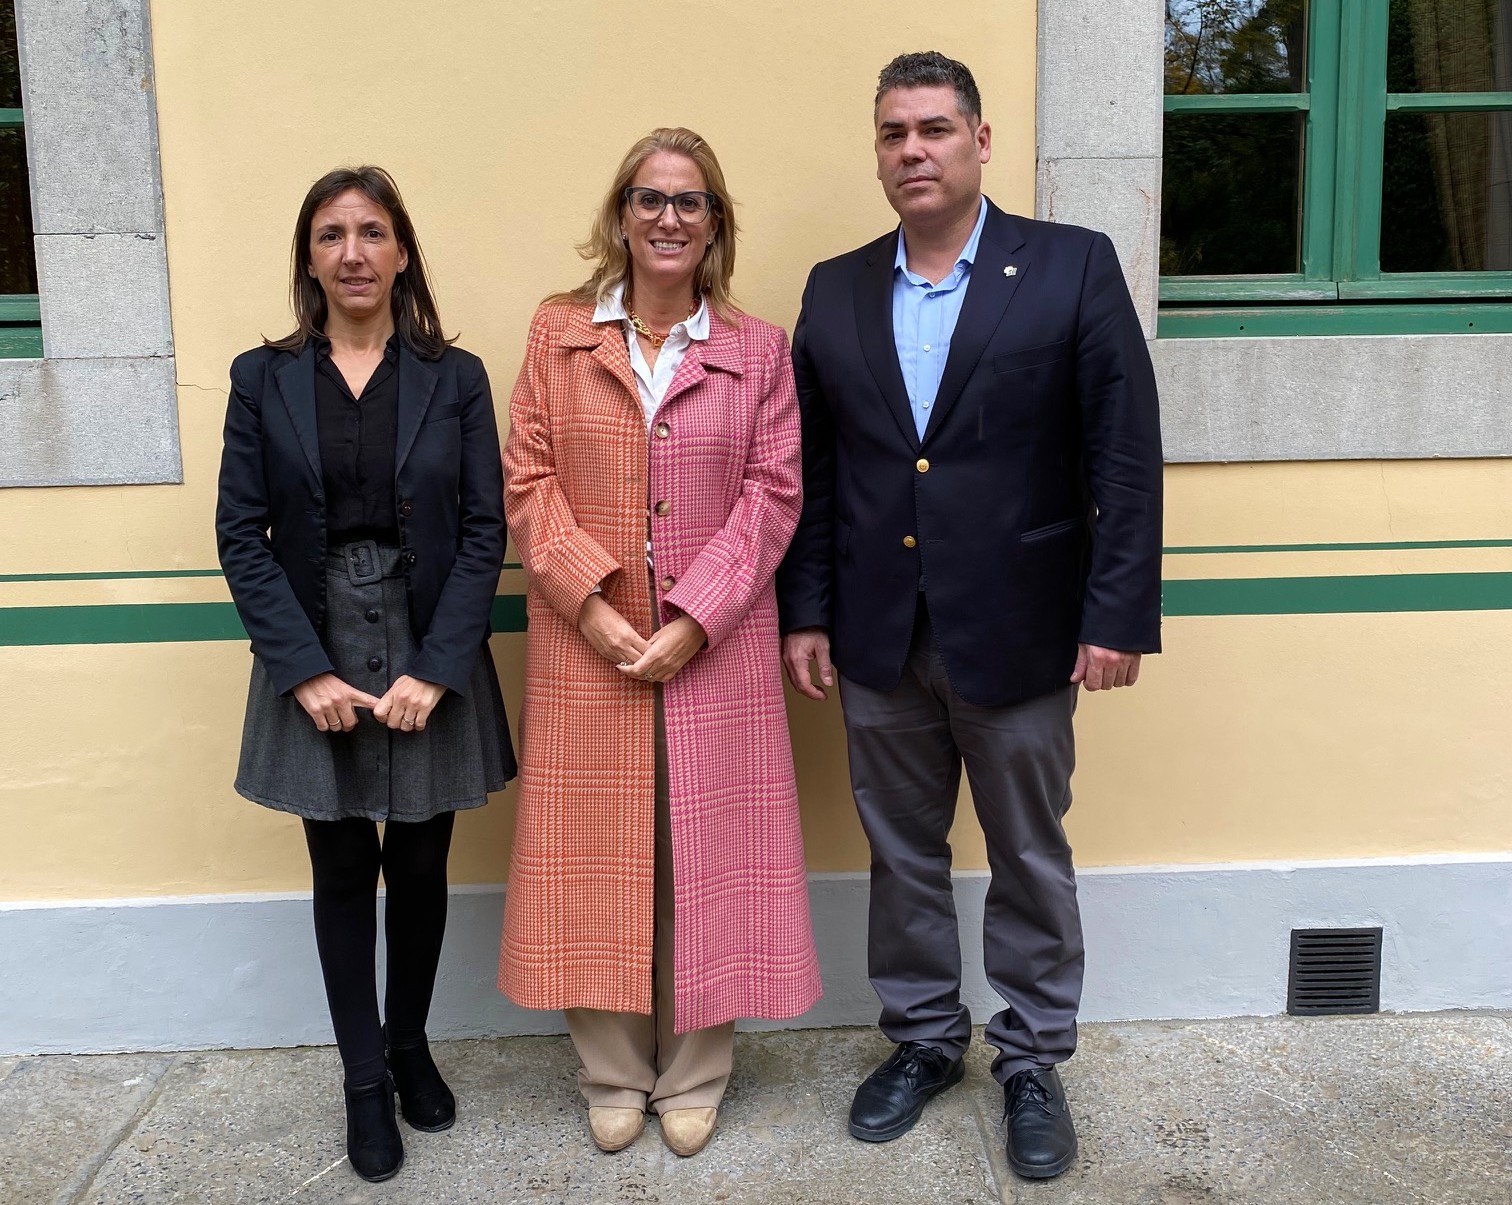 Lídia Arribas. alcaldesa de Caleruega, nueva presidenta de la región norte de la Asociación de los Pueblos Bonitos de España.